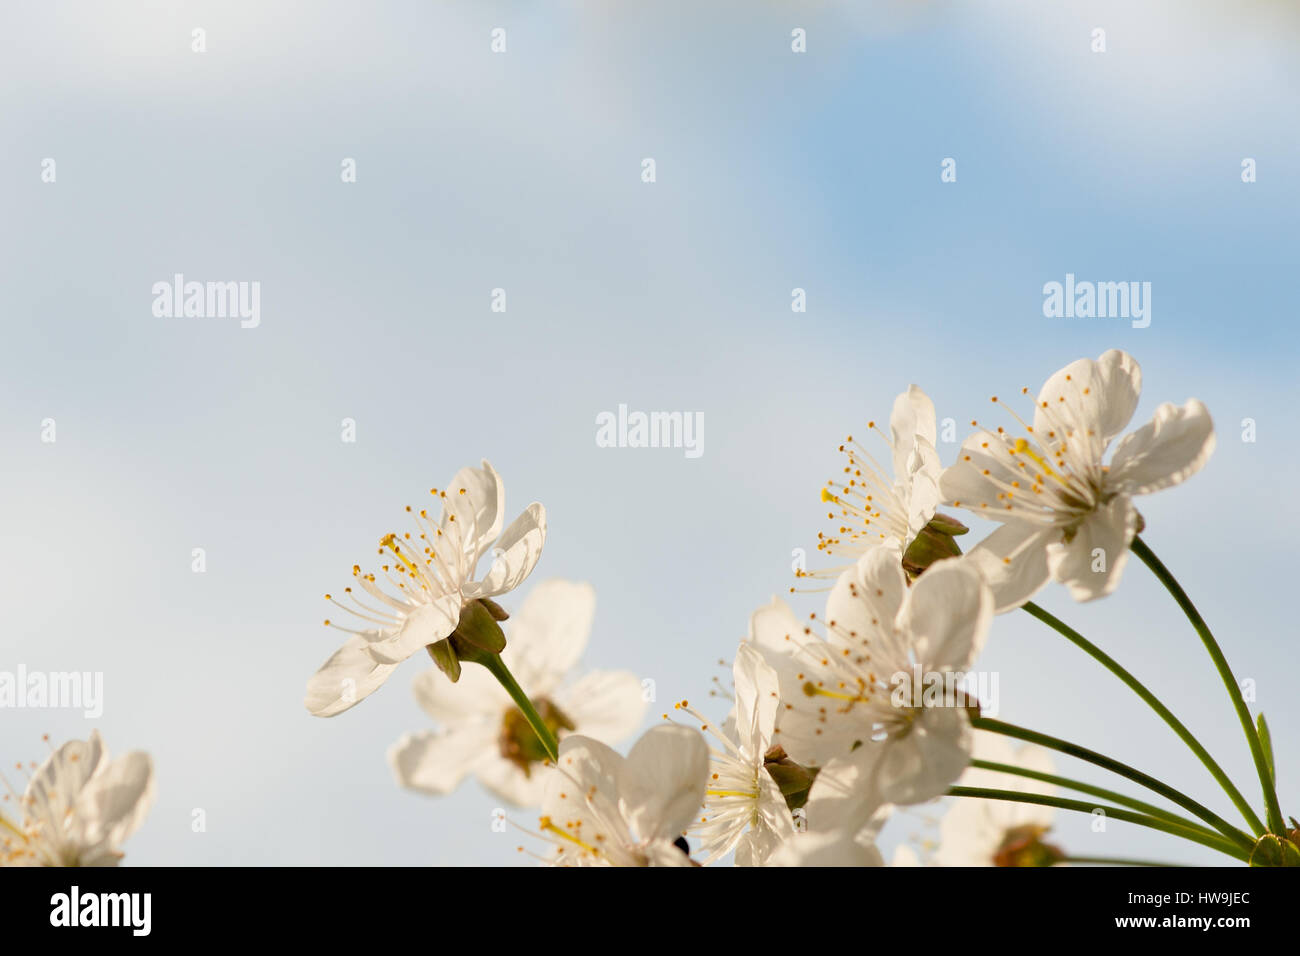 Kirschrote Blüten am unteren Rand des Bildes vor dem weichen blauen Hintergrund des Himmels und der Wolken. Freiraum zur Texteingabe. Stockfoto